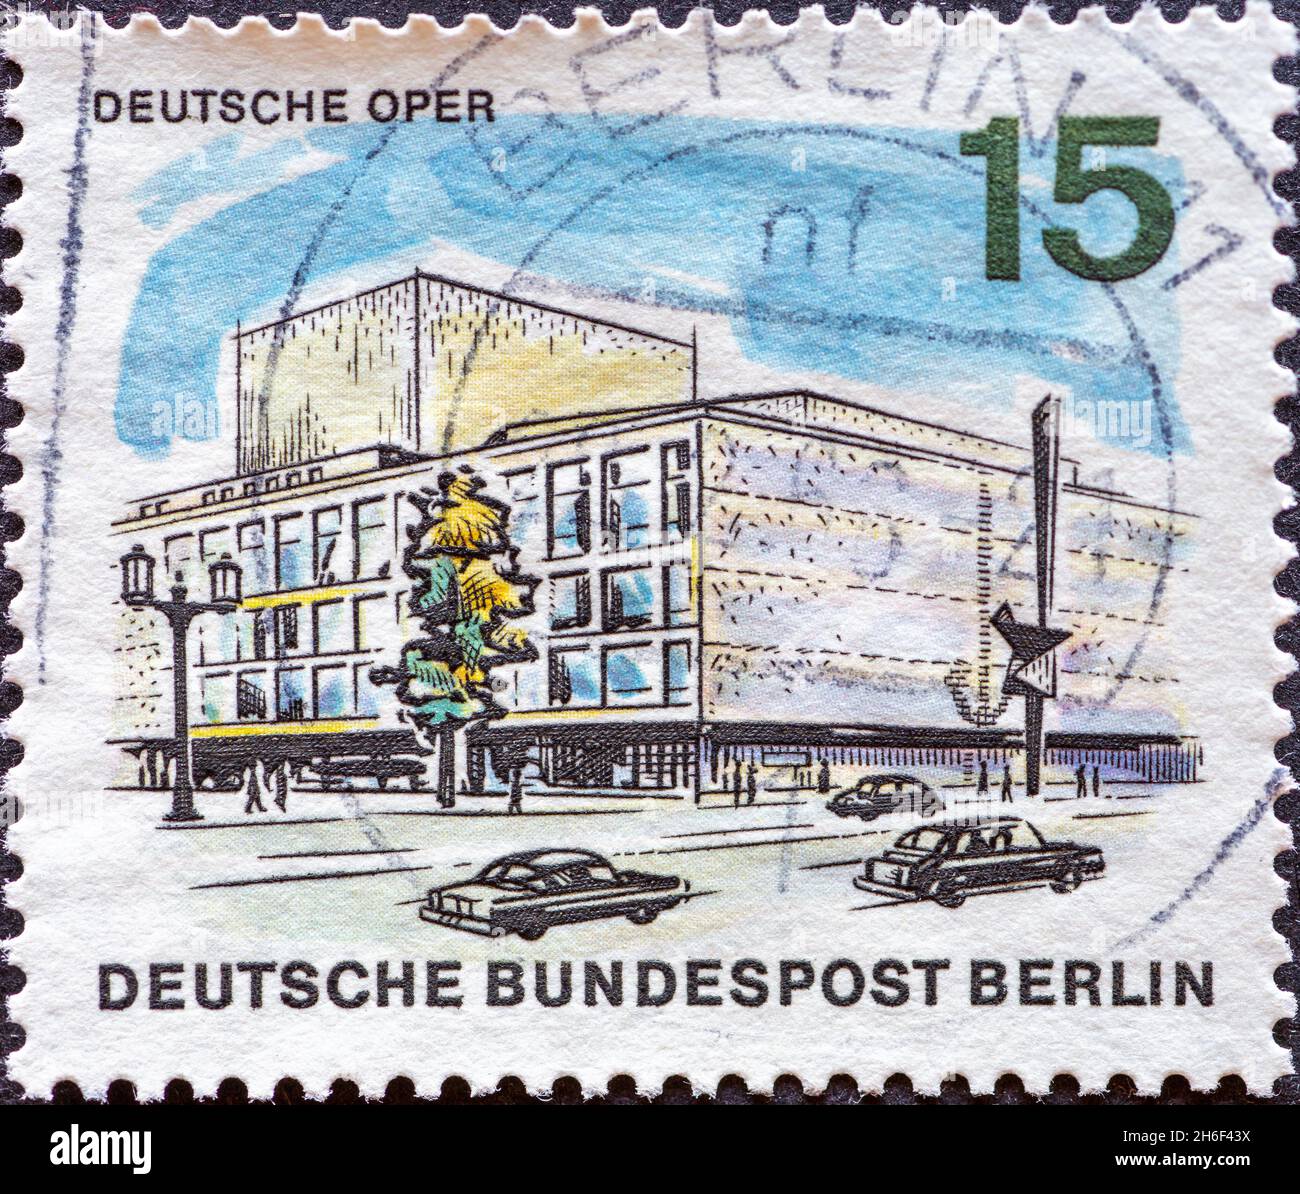 ALLEMAGNE, Berlin - VERS 1965: Timbre-poste d'Allemagne, Berlin montrant une série le nouveau Berlin: Opéra allemand Banque D'Images